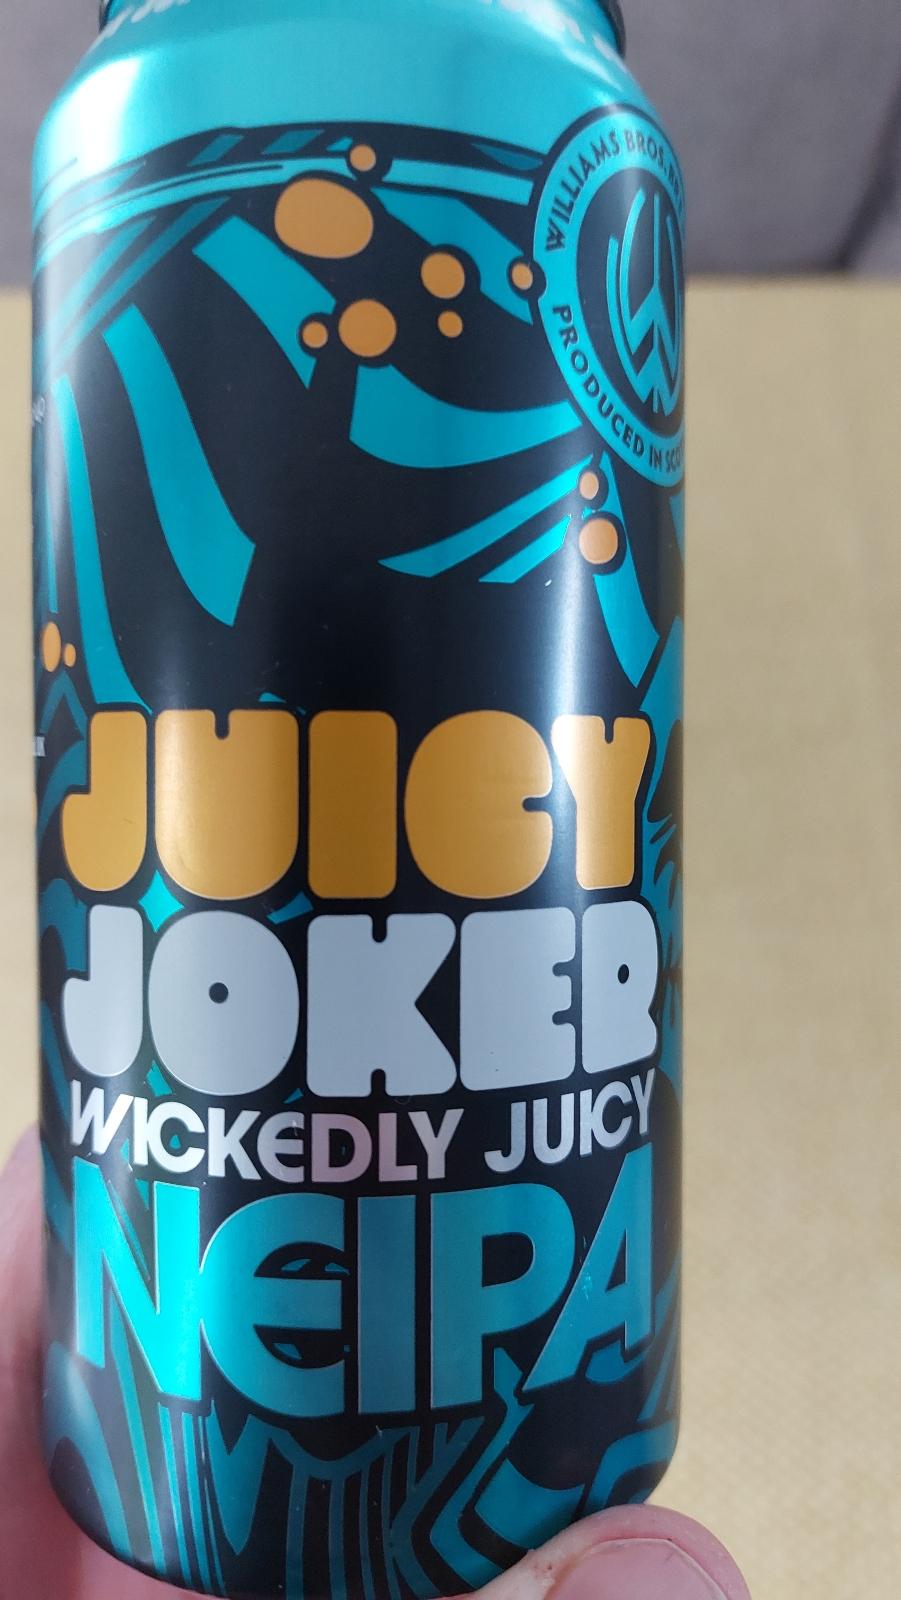 Juicy Joker 